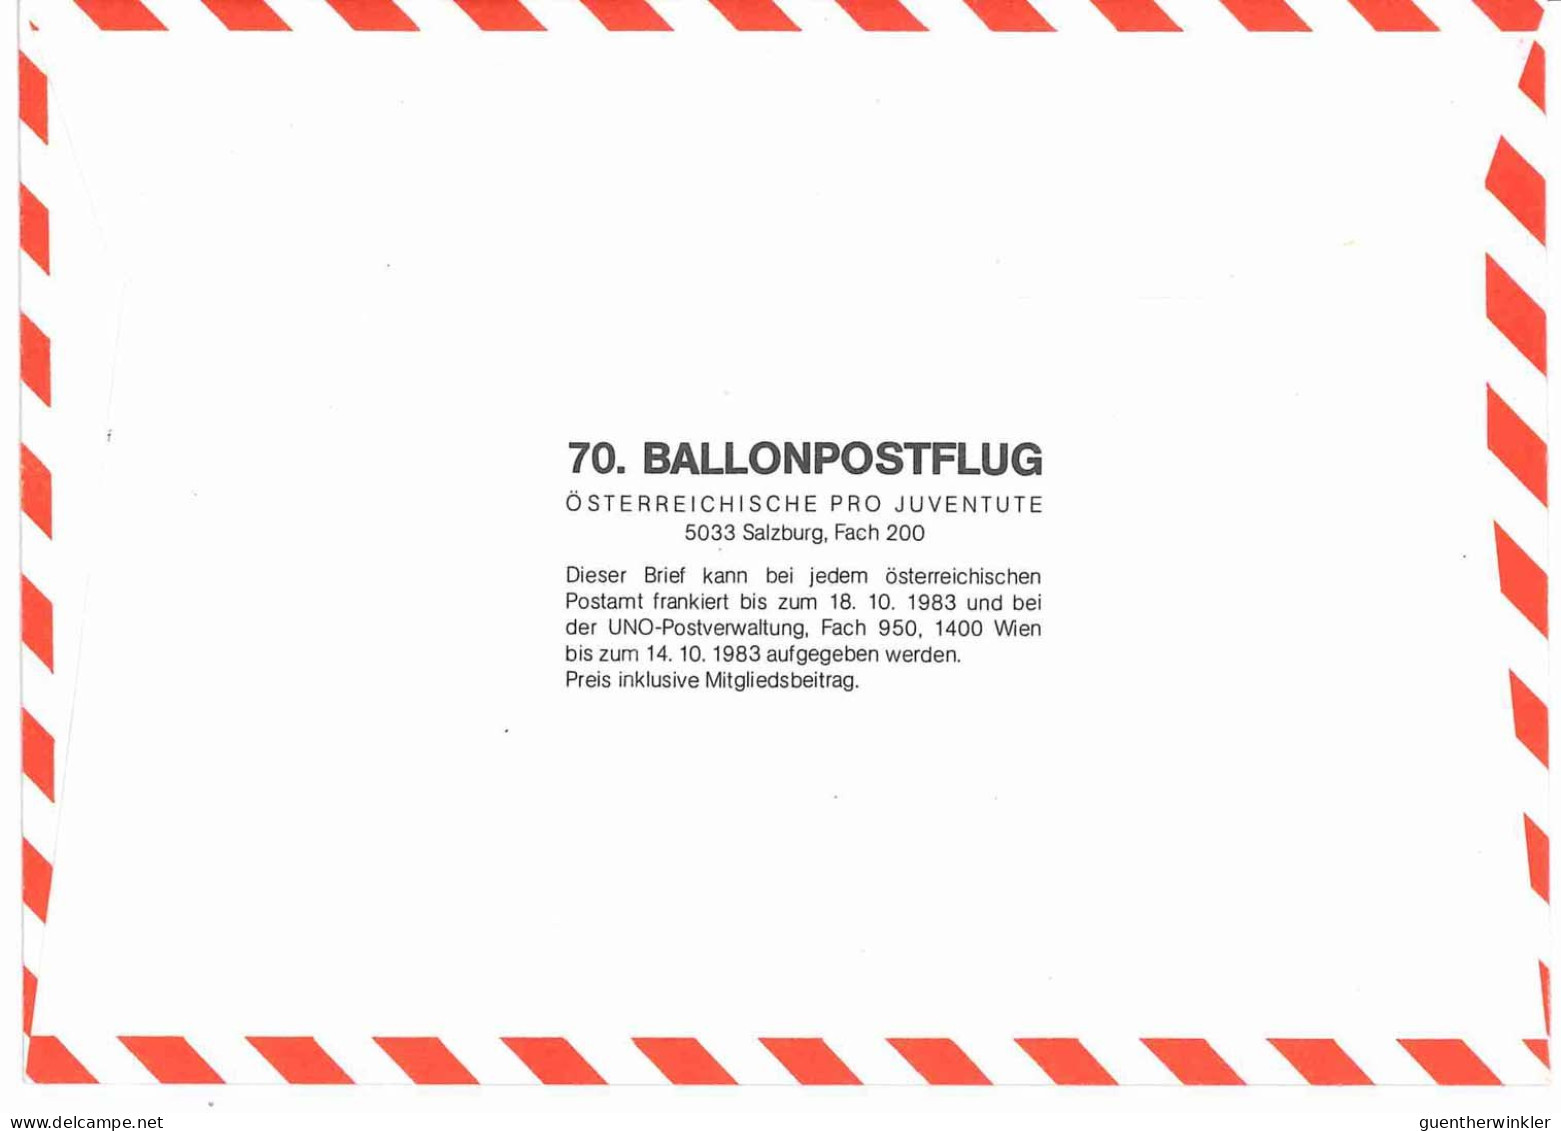 Regulärer Ballonpostflug Nr. 70a Der Pro Juventute [RBP70a] - Per Palloni